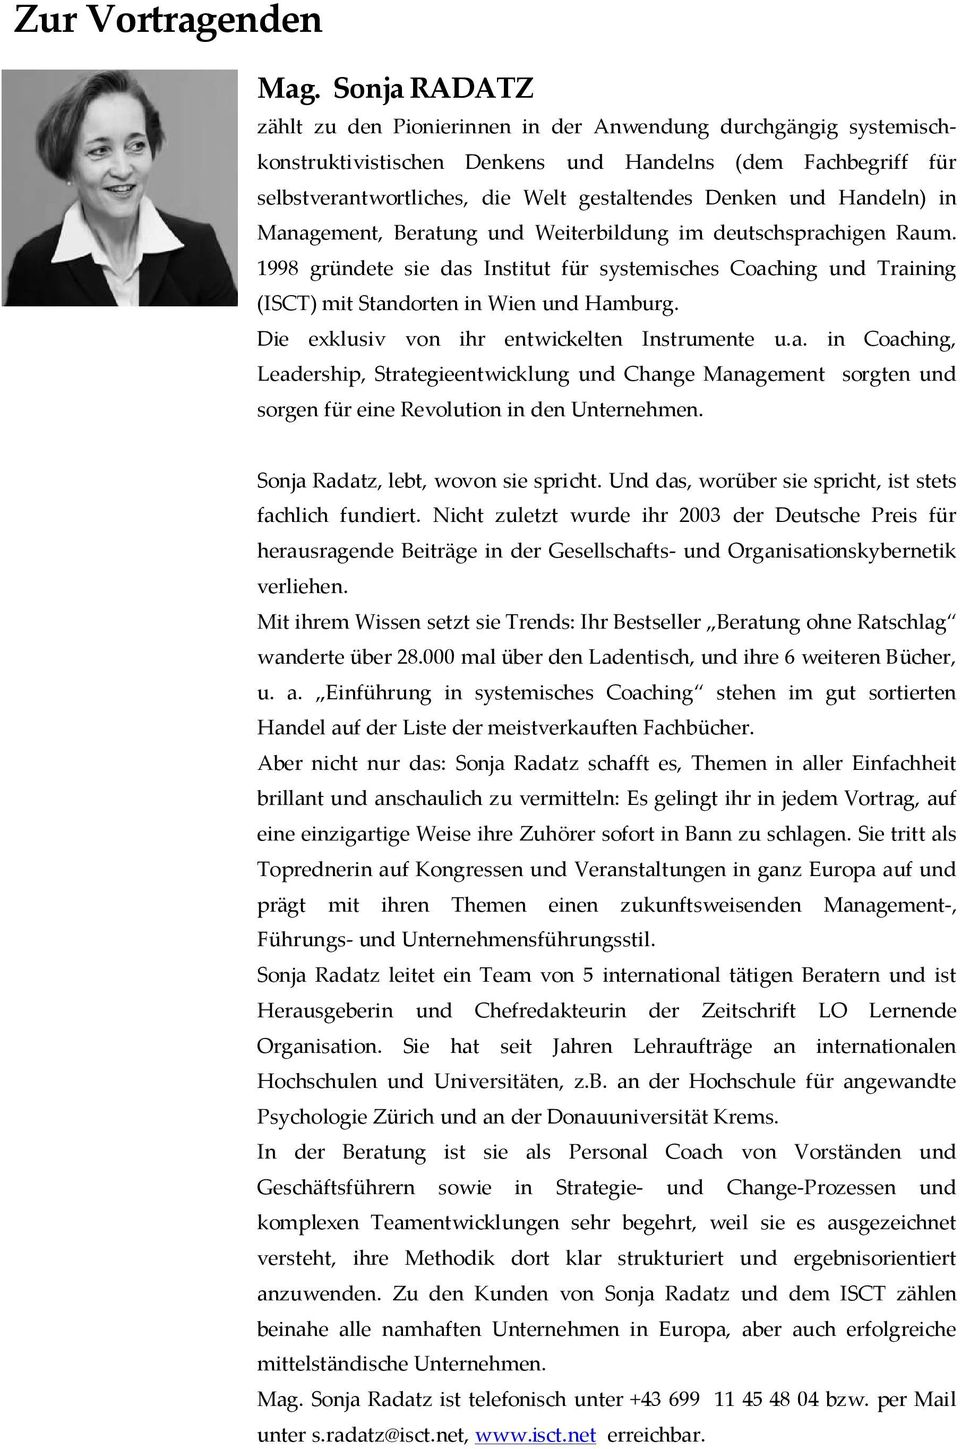 Handeln) in Management, Beratung und Weiterbildung im deutschsprachigen Raum. 1998 gründete sie das Institut für systemisches Coaching und Training (ISCT) mit Standorten in Wien und Hamburg.